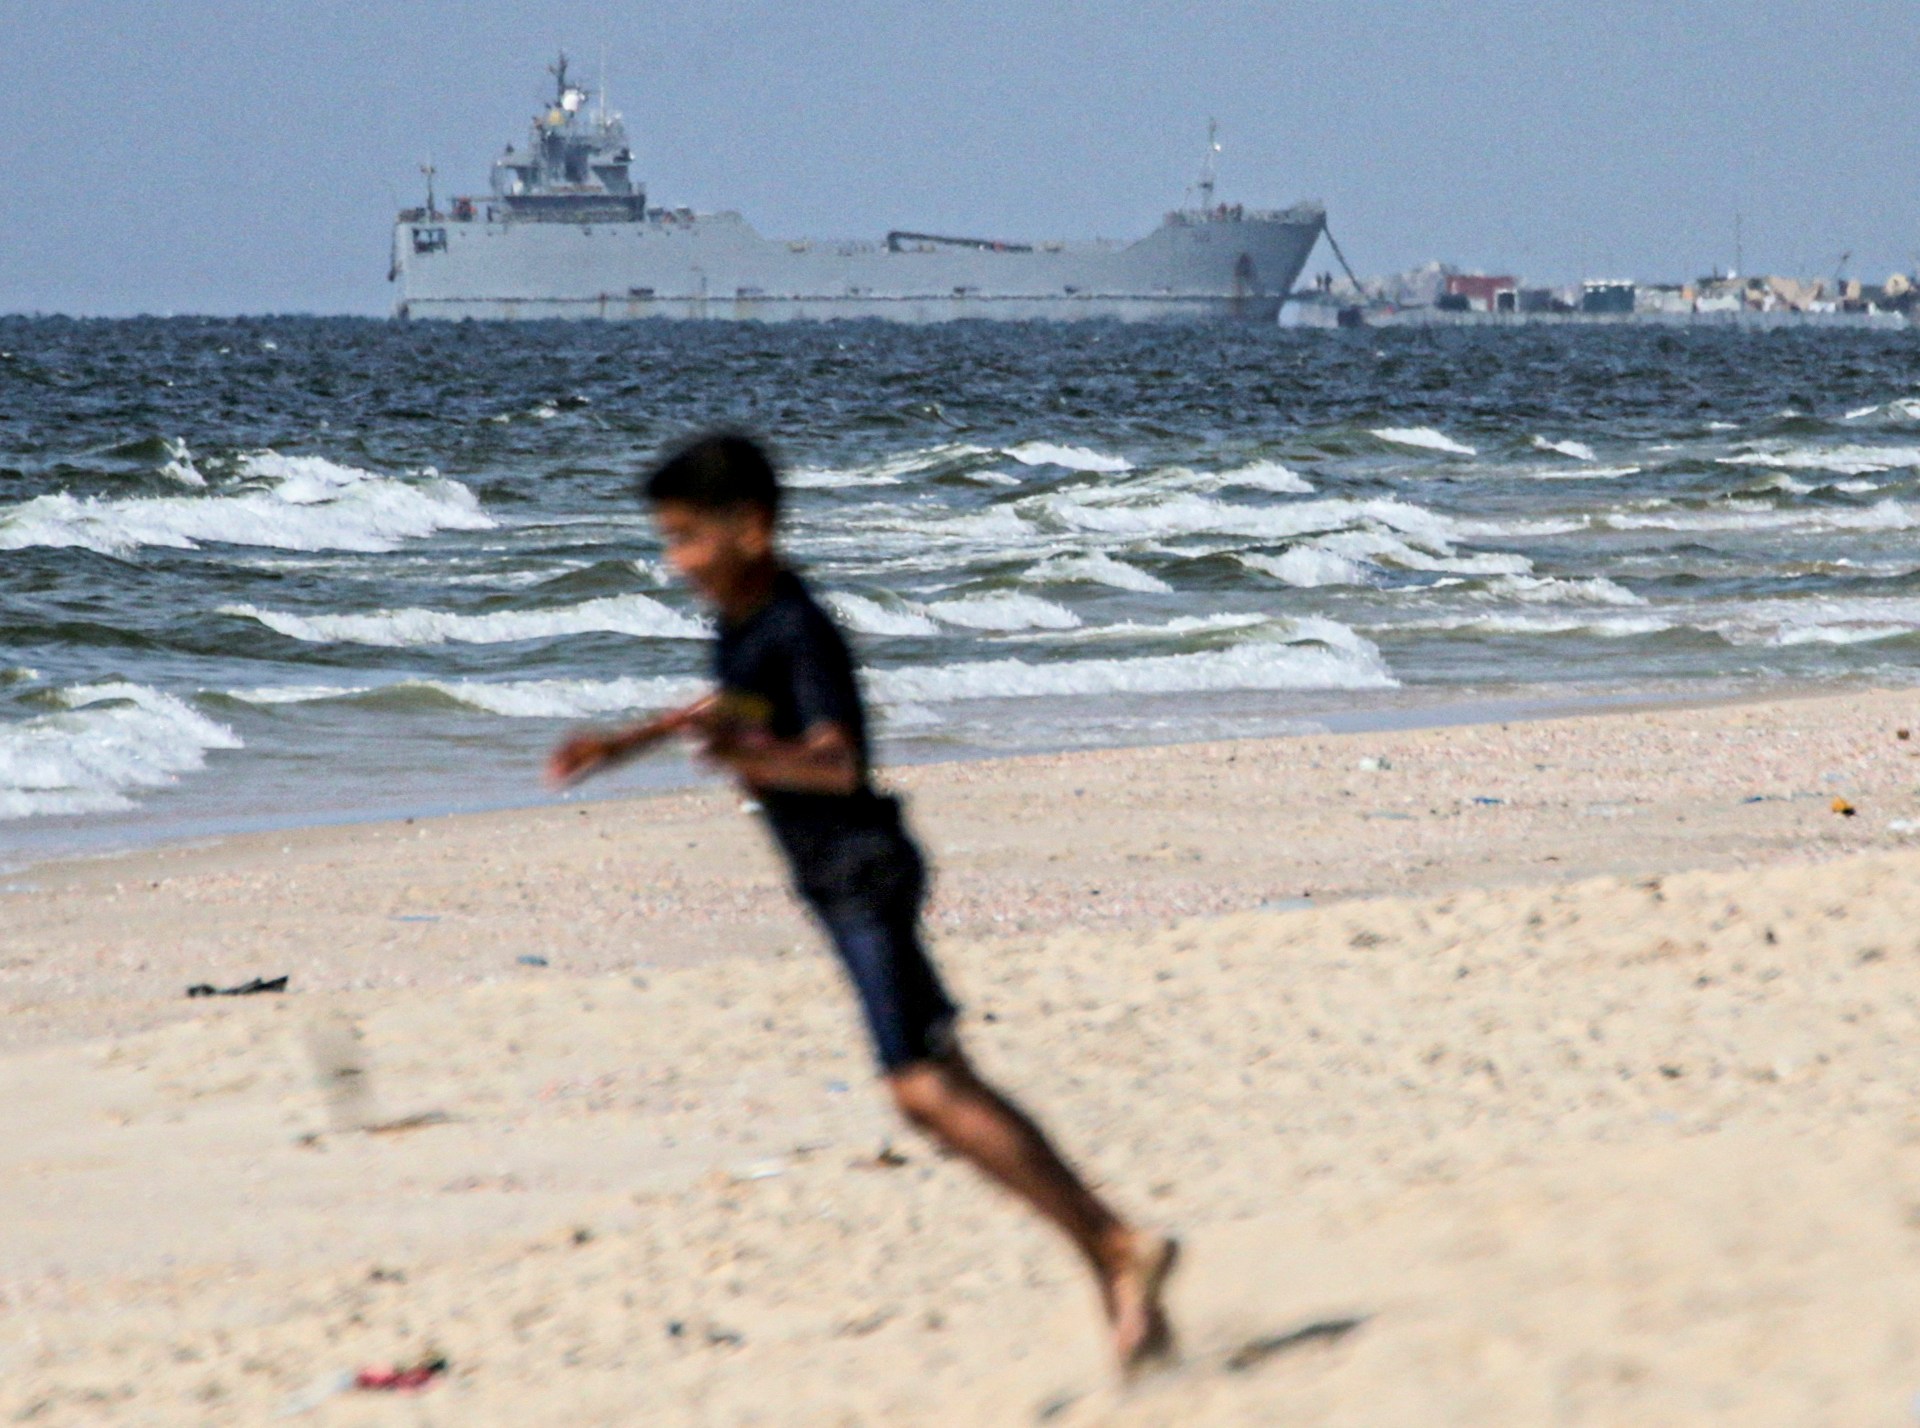 السفن التي تدعم رصيف المساعدات الذي بنته الولايات المتحدة في غزة تجرفها الأمواج العاتية |  أخبار الصراع الإسرائيلي الفلسطيني